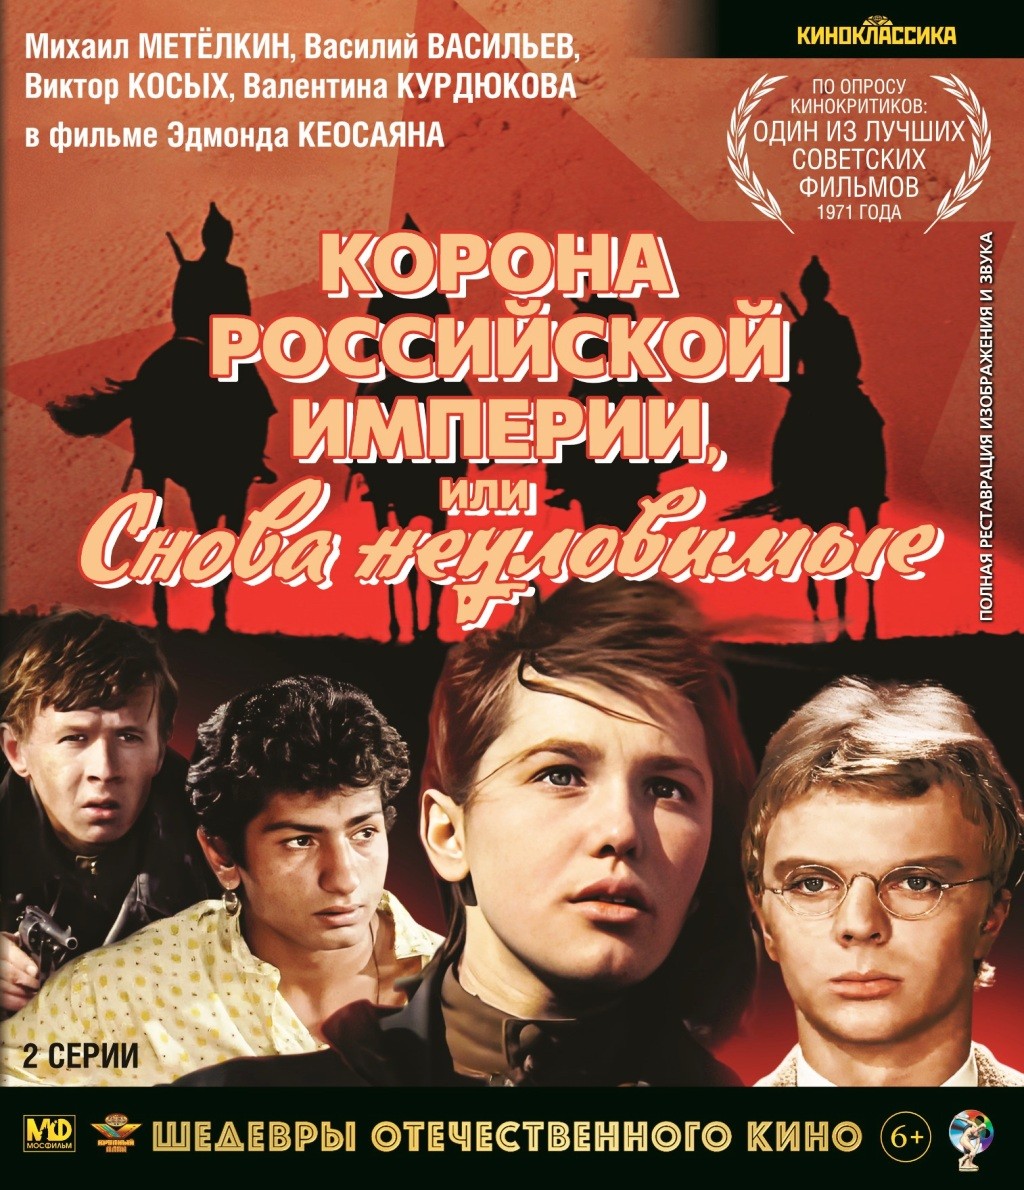 

Шедевры отечественного кино: Неуловимые мстители. Фильм 3: Корона Российской империи, или снова неуловимые (Blu-ray)